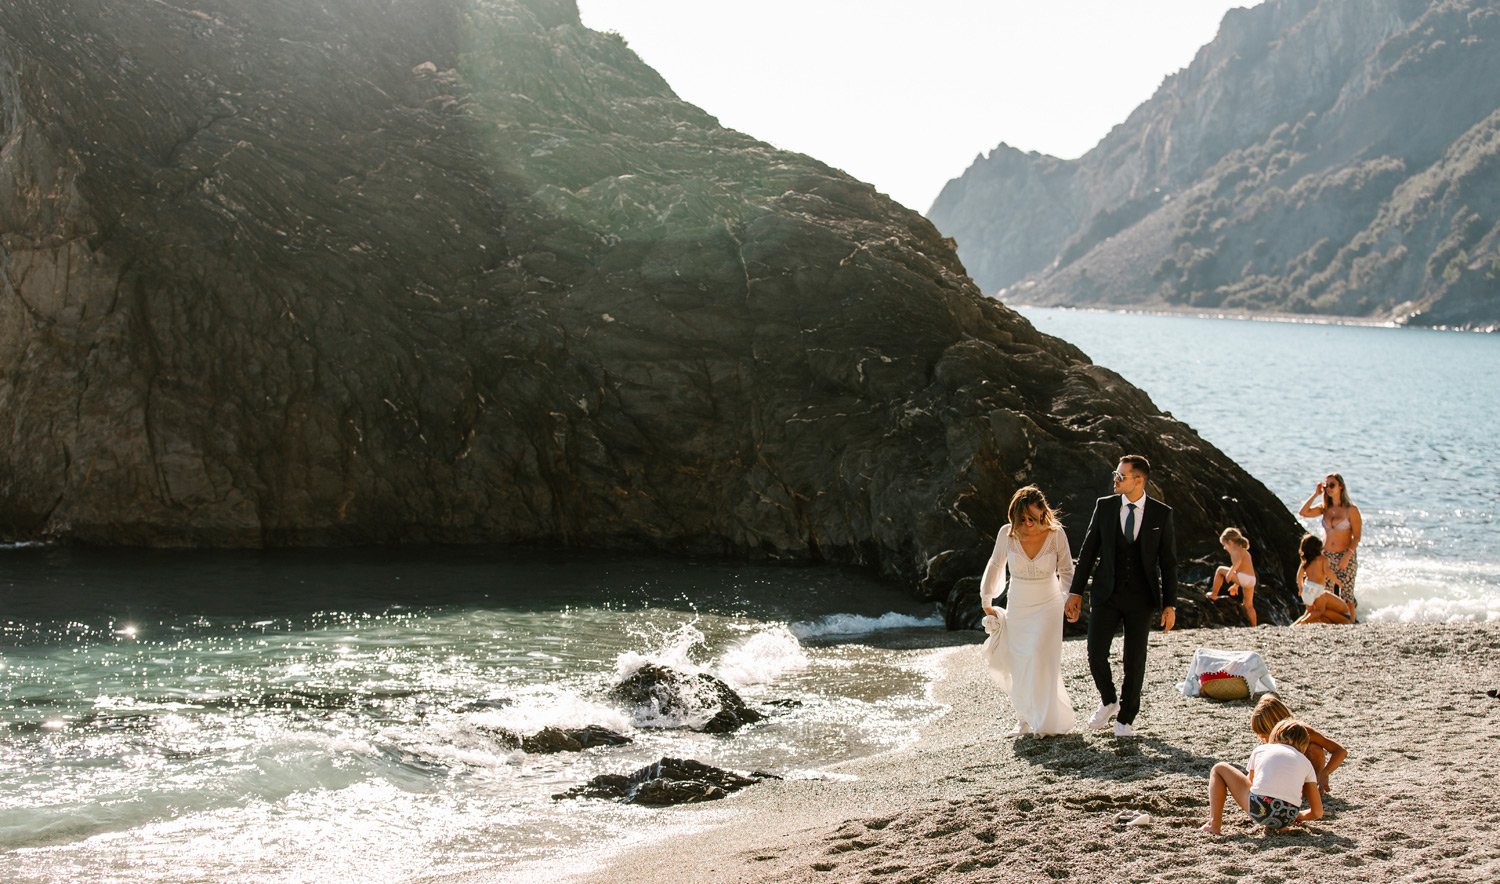 064-vilayvidal-fotografia-bodas-gandia-valencia-alicante-Preboda-Belinda-Jesus-Italia_Cinque_Terre.jpg